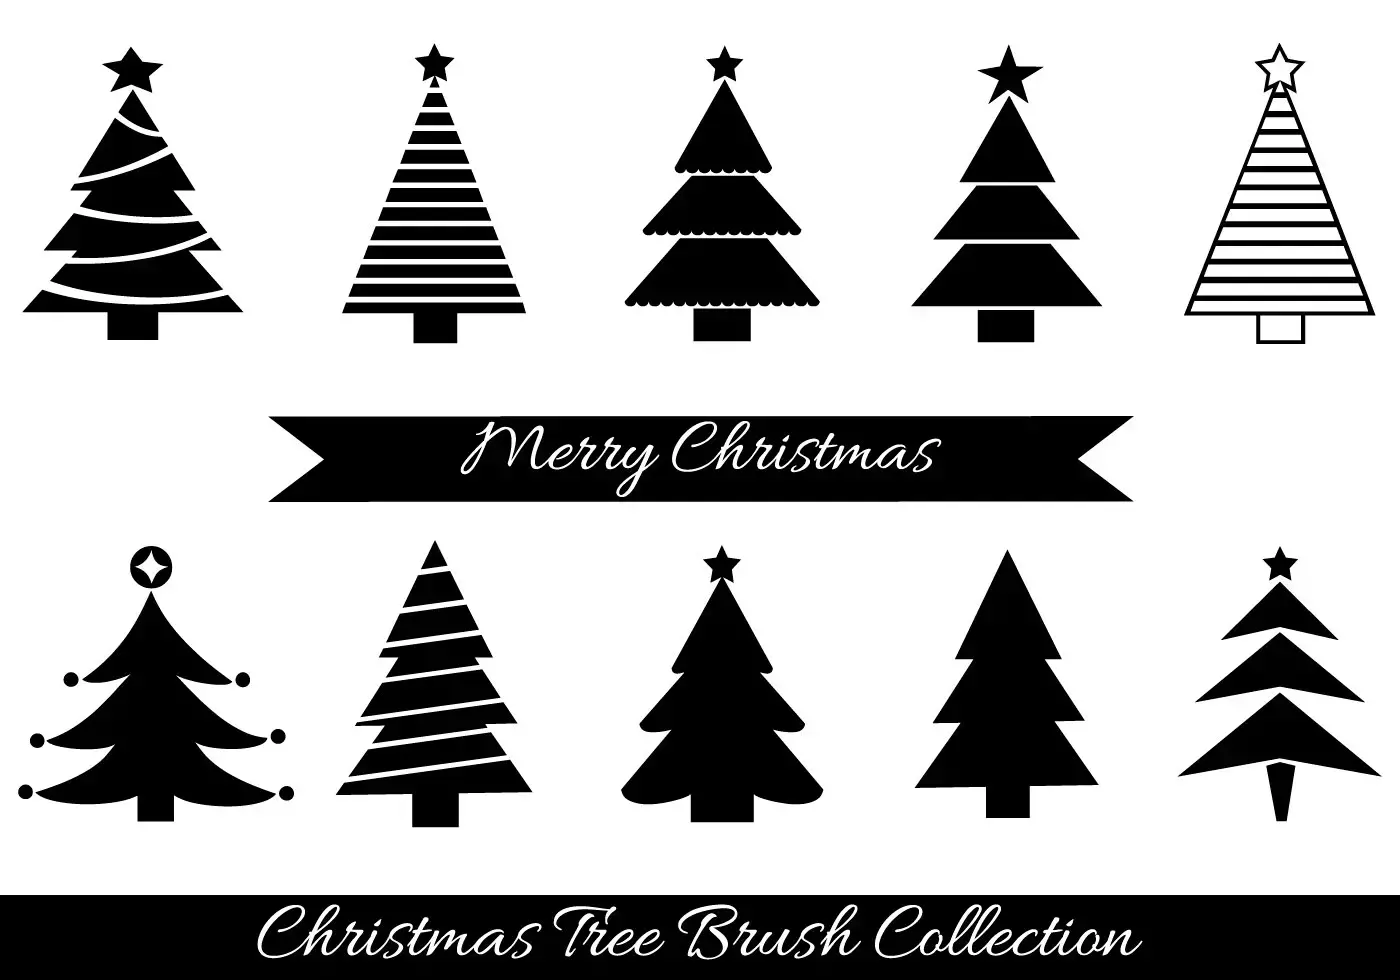 Christmas tree brushes